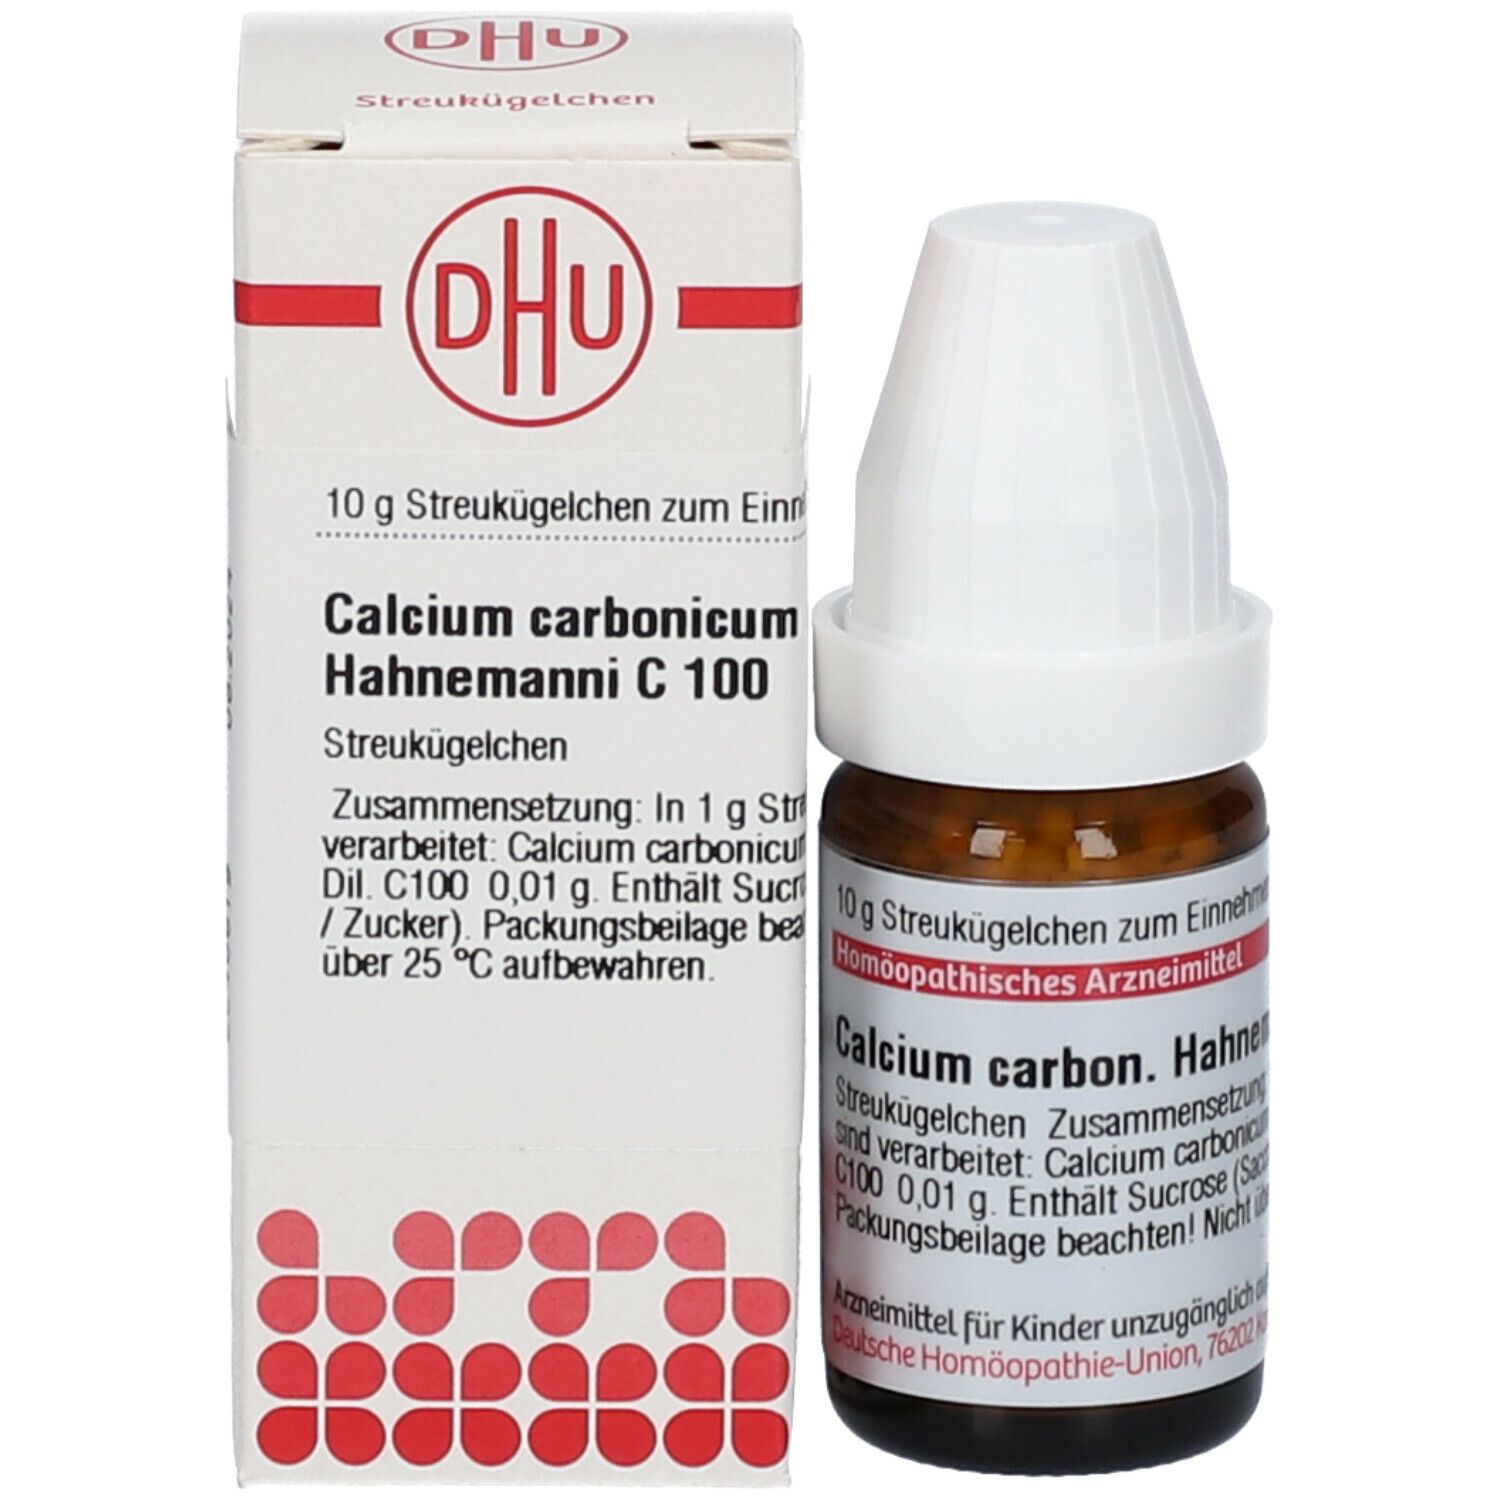 DHU Calcium Carbonicum Hahnemanni C100